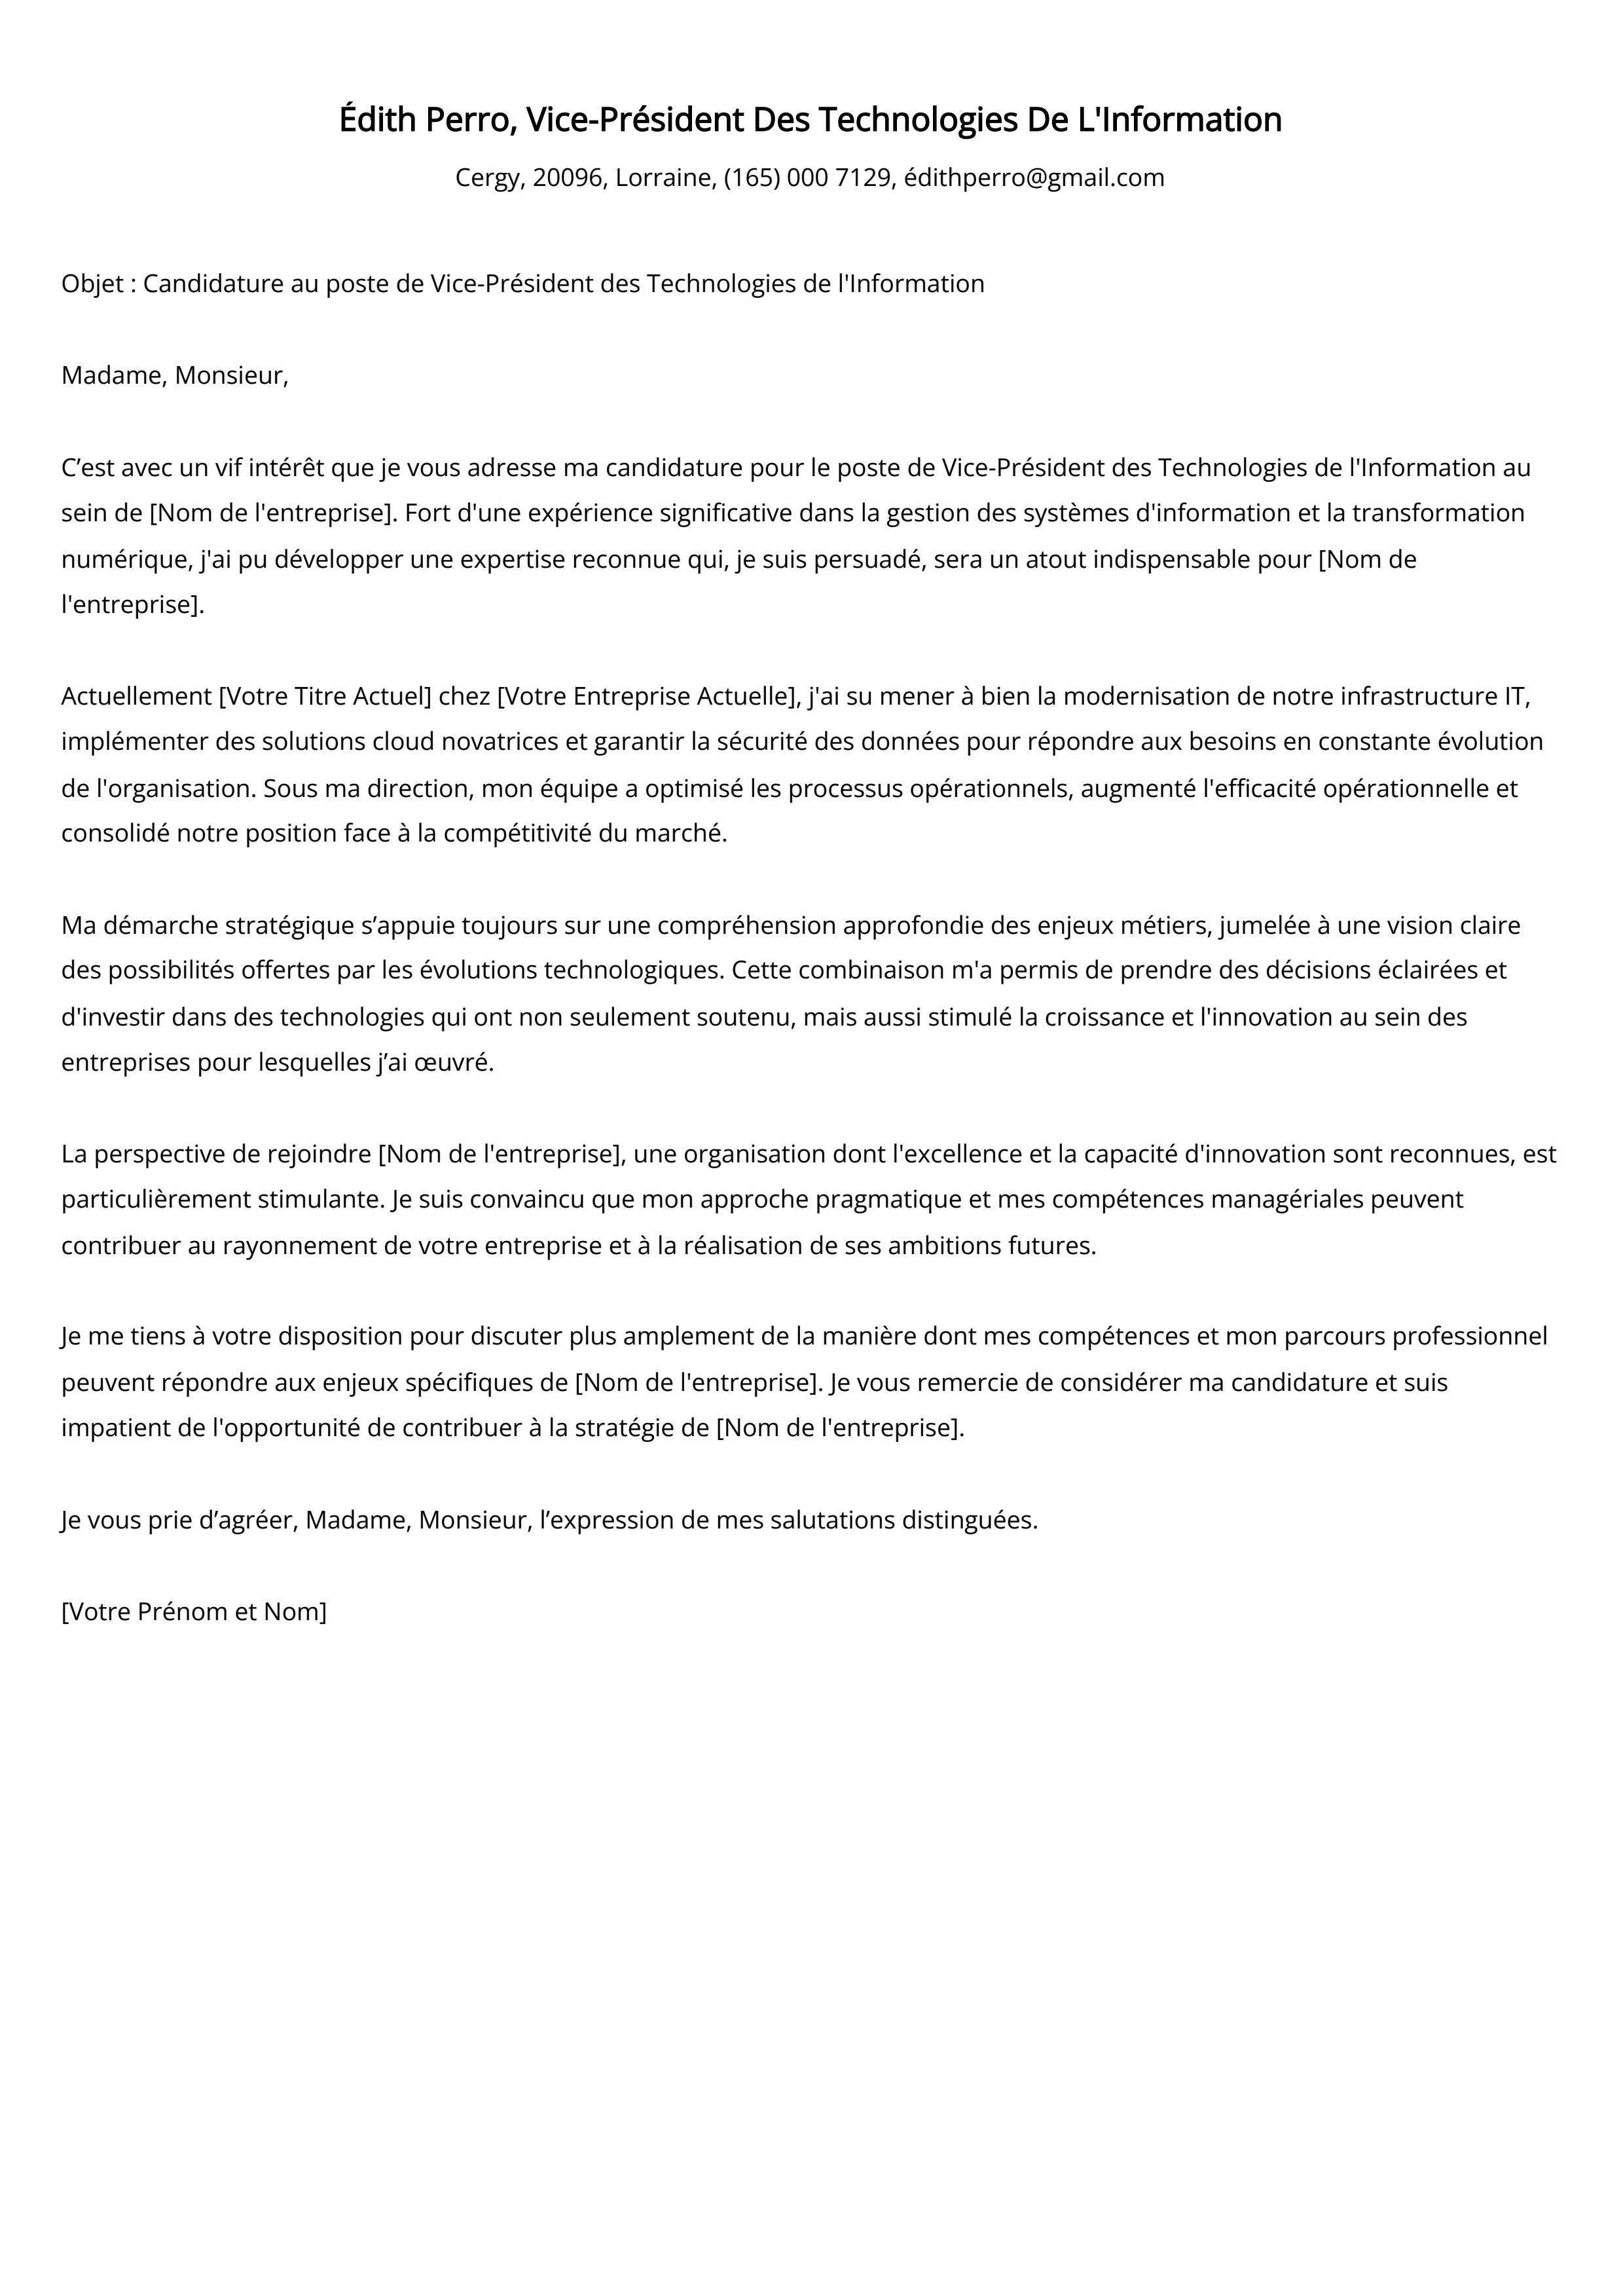 Exemple de lettre de couverture du vice-président des technologies de l'information